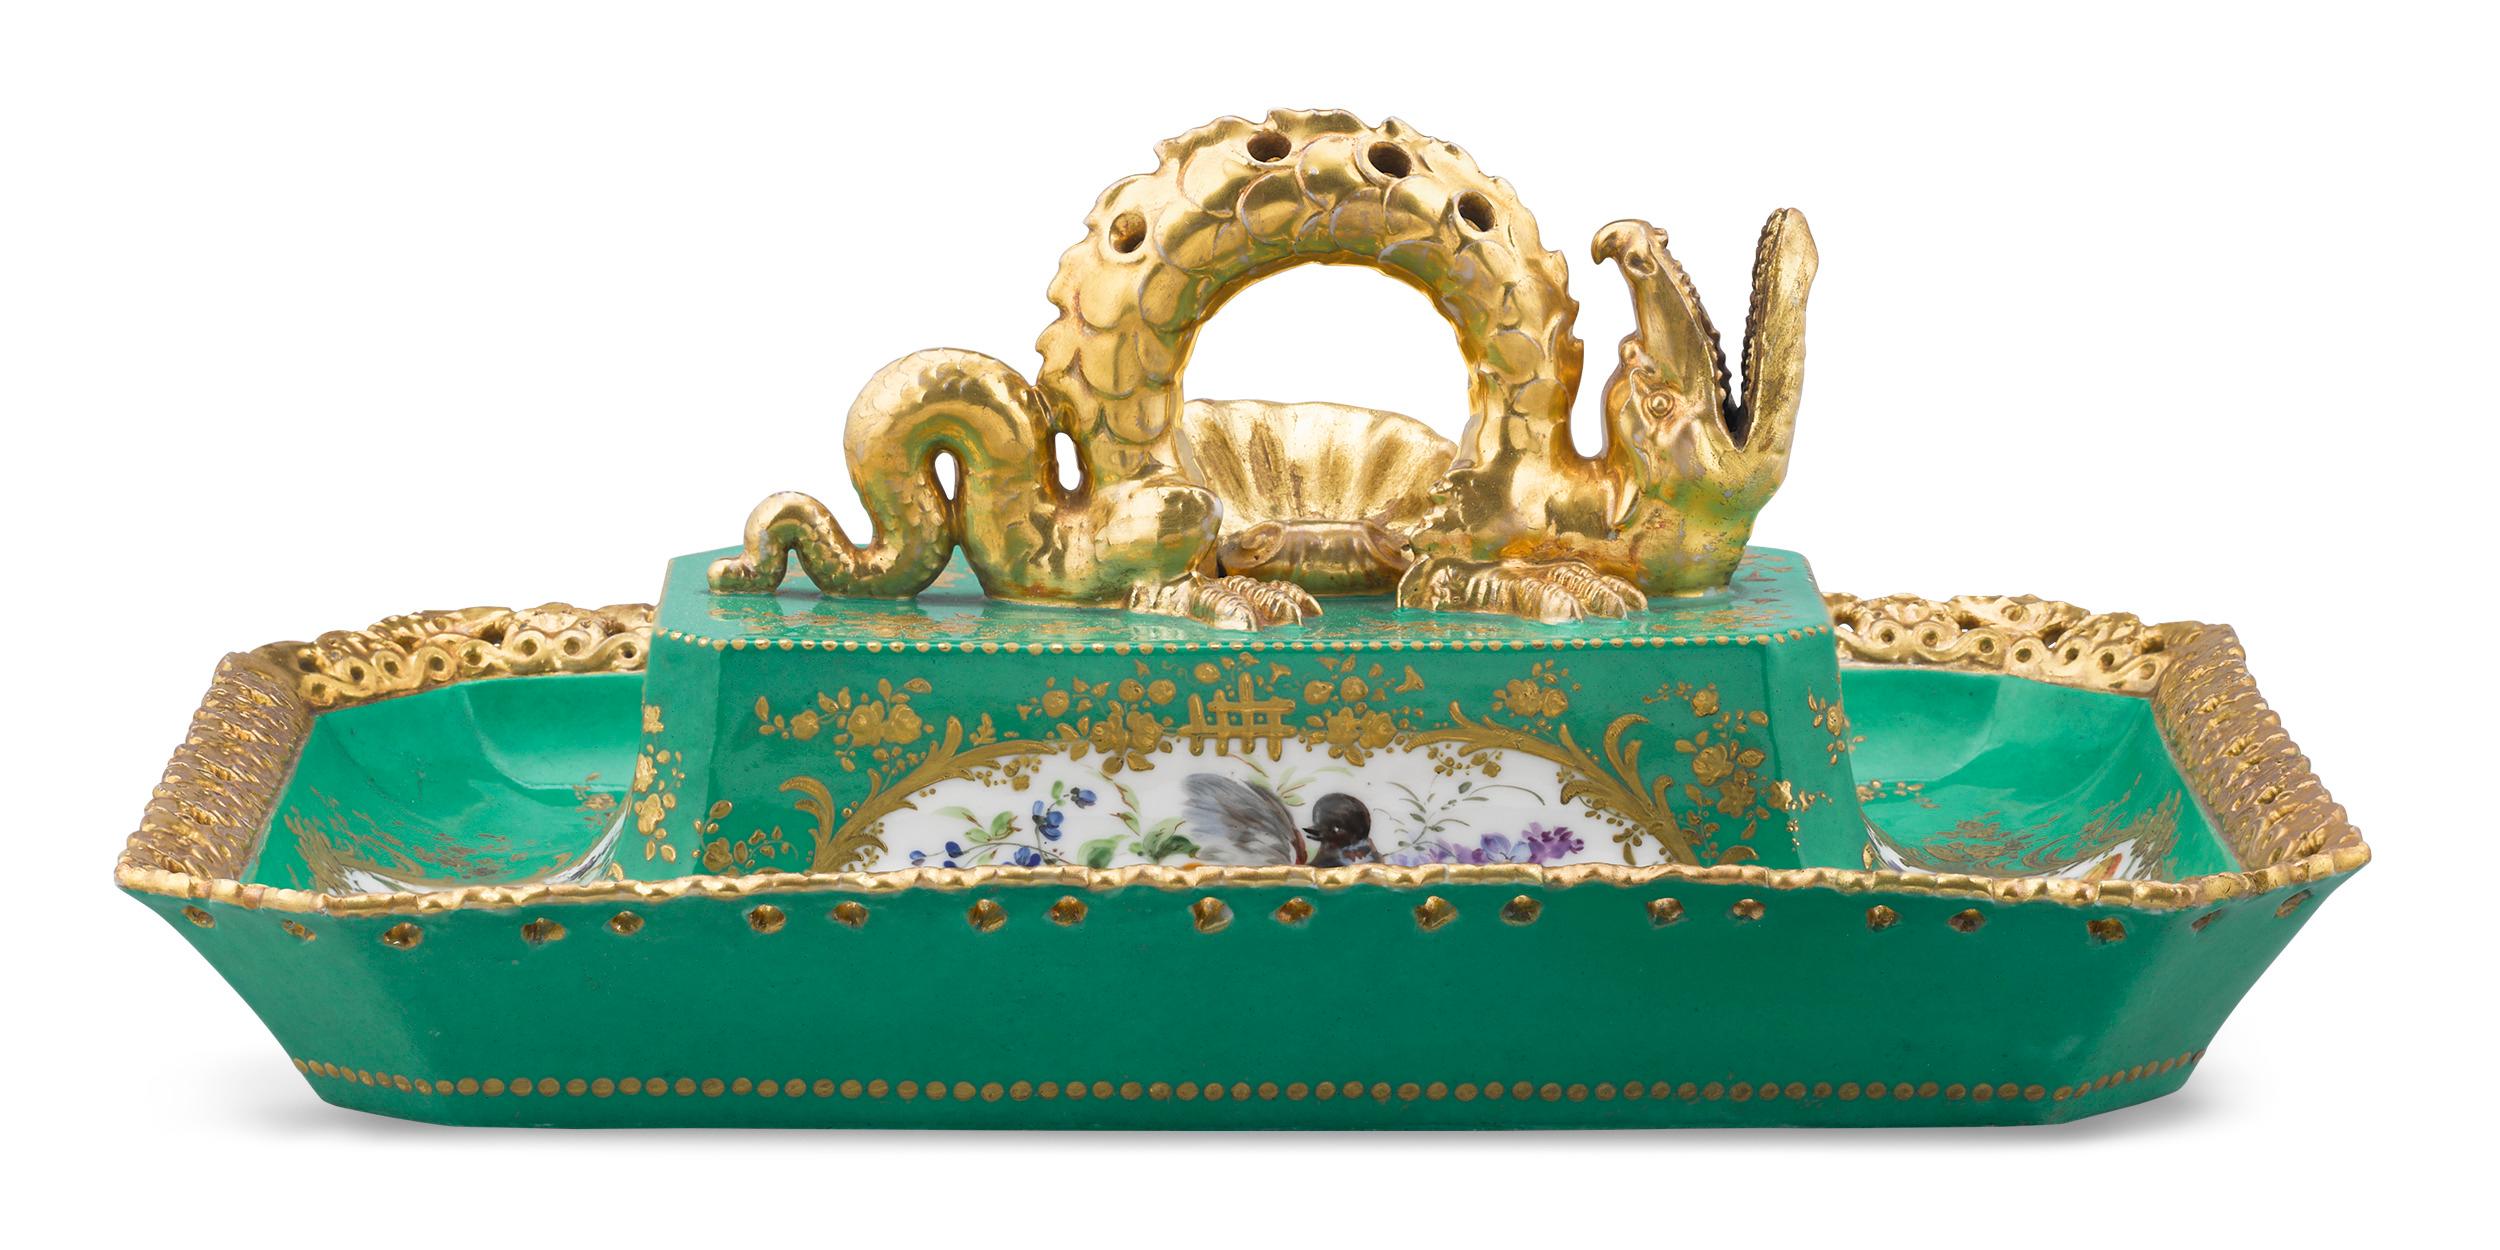 Dieses reich verzierte Tablett wurde von dem berühmten französischen Porzellanhersteller Jacob Petit entworfen. Das Stück wird von einem beeindruckenden vergoldeten chinesischen Drachen gekrönt und zeichnet sich durch fein handgemalte Szenen aus,